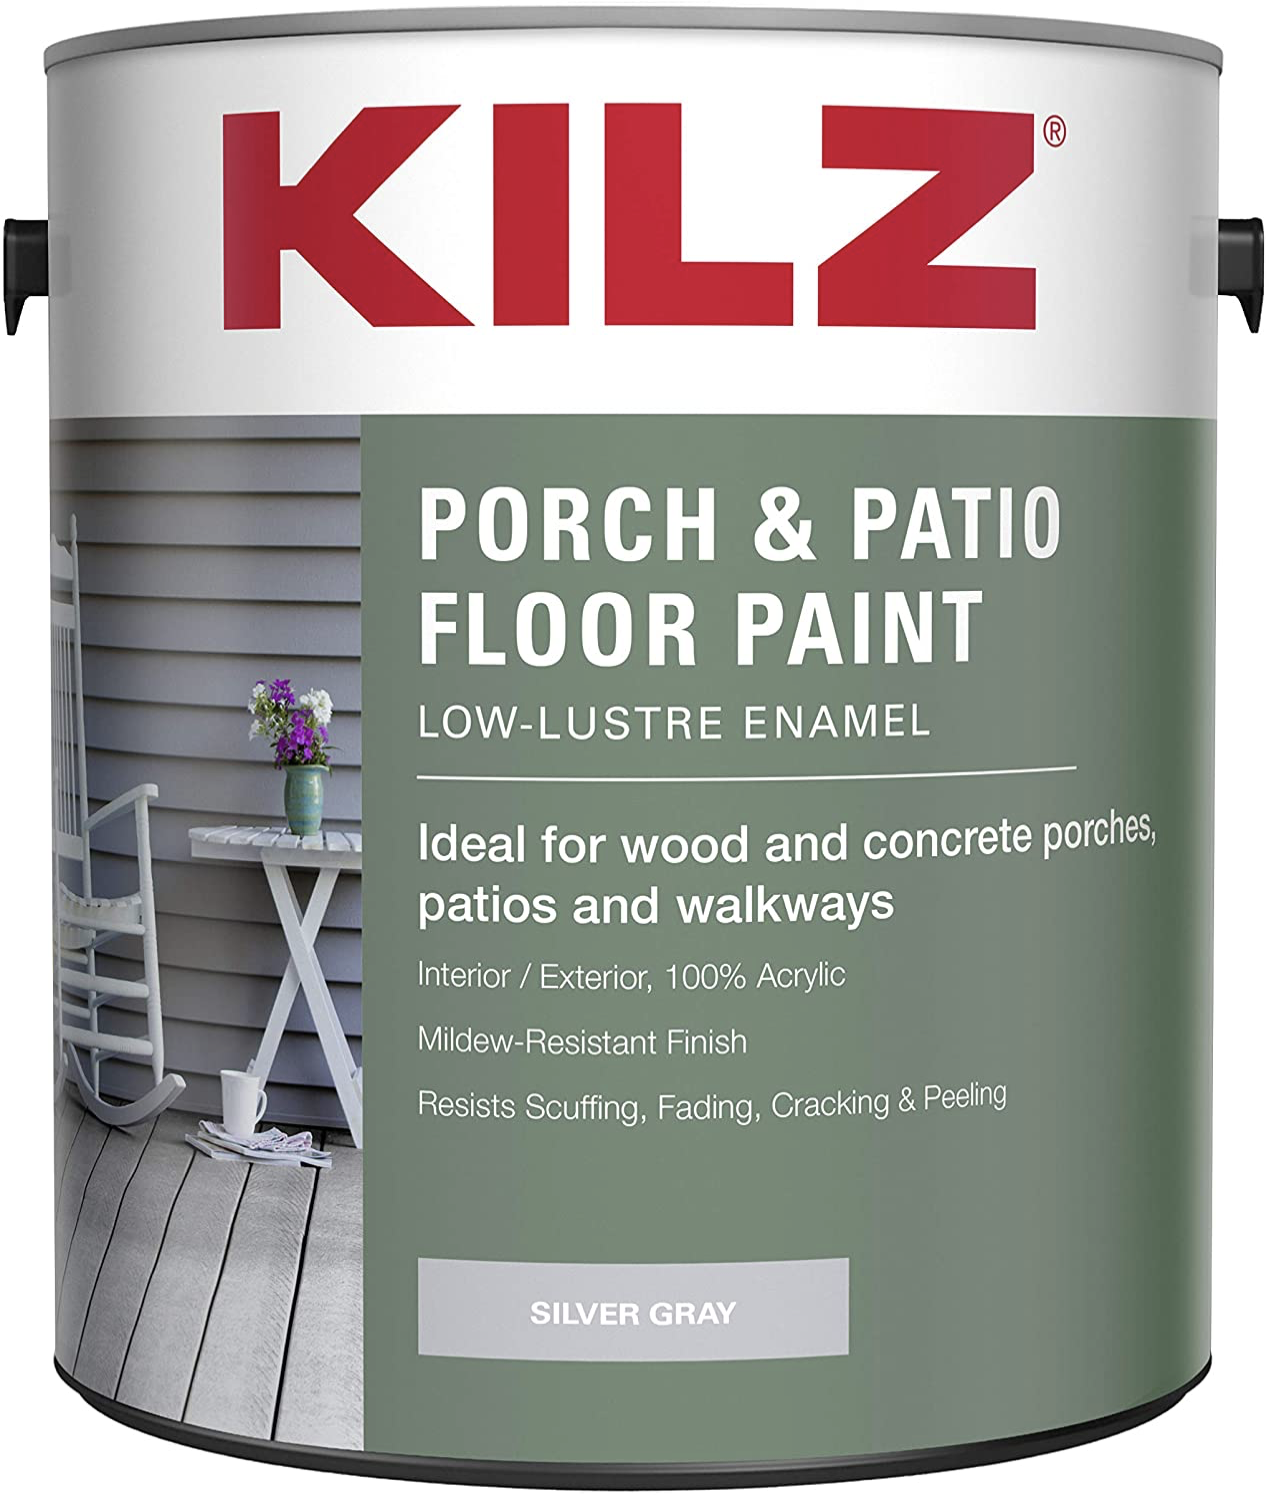 KILZ Low-Lustre Enamel Porch & Patio Floor Paint